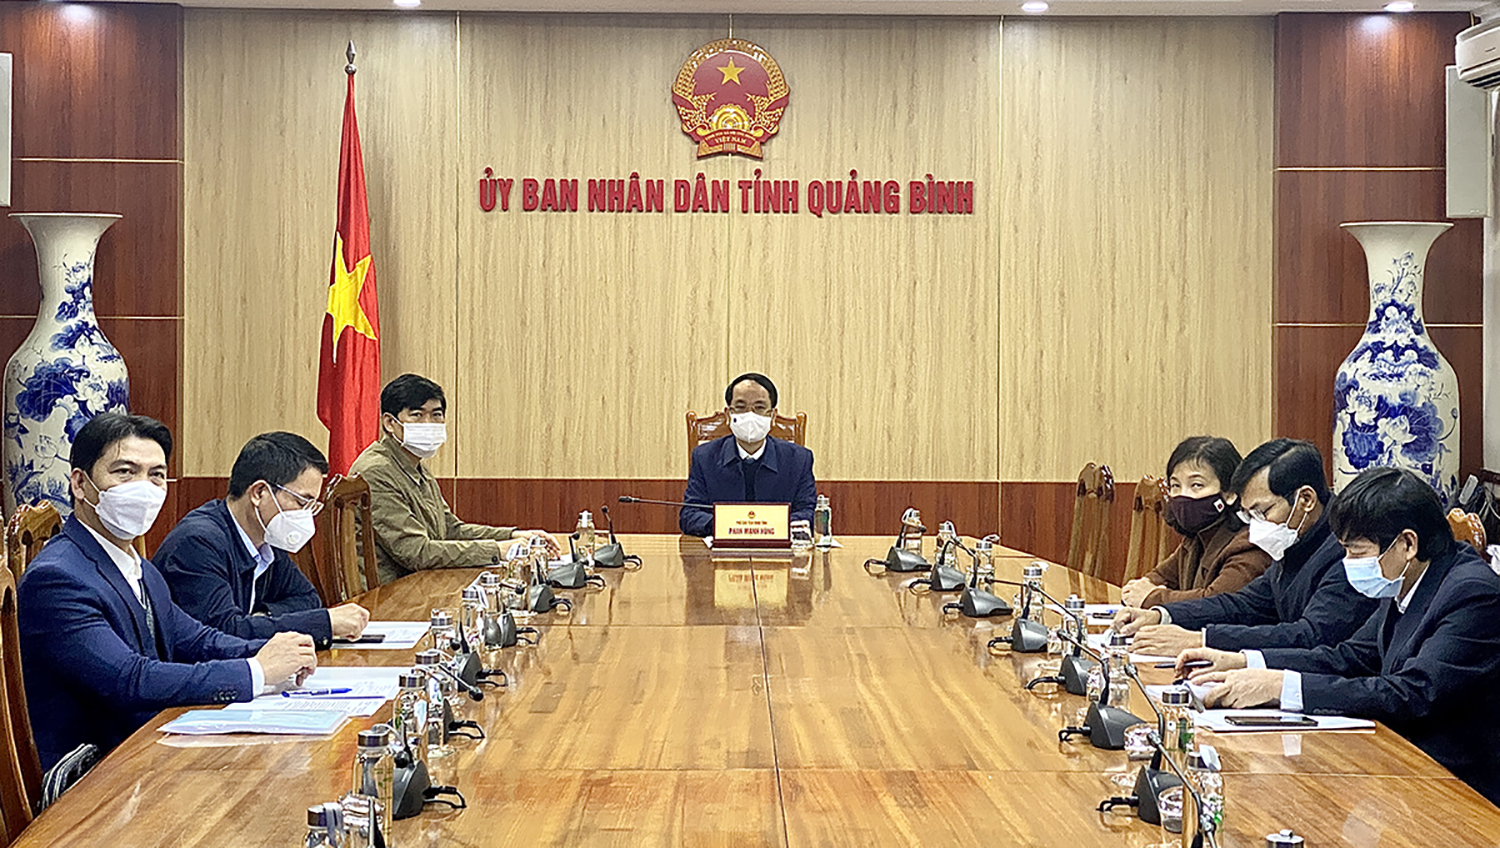 Đồng chí Phan Mạnh Hùng, Phó Chủ tịch UBND tỉnh chủ trì hội nghị tại điểm cầu tỉnh Quảng Bình.